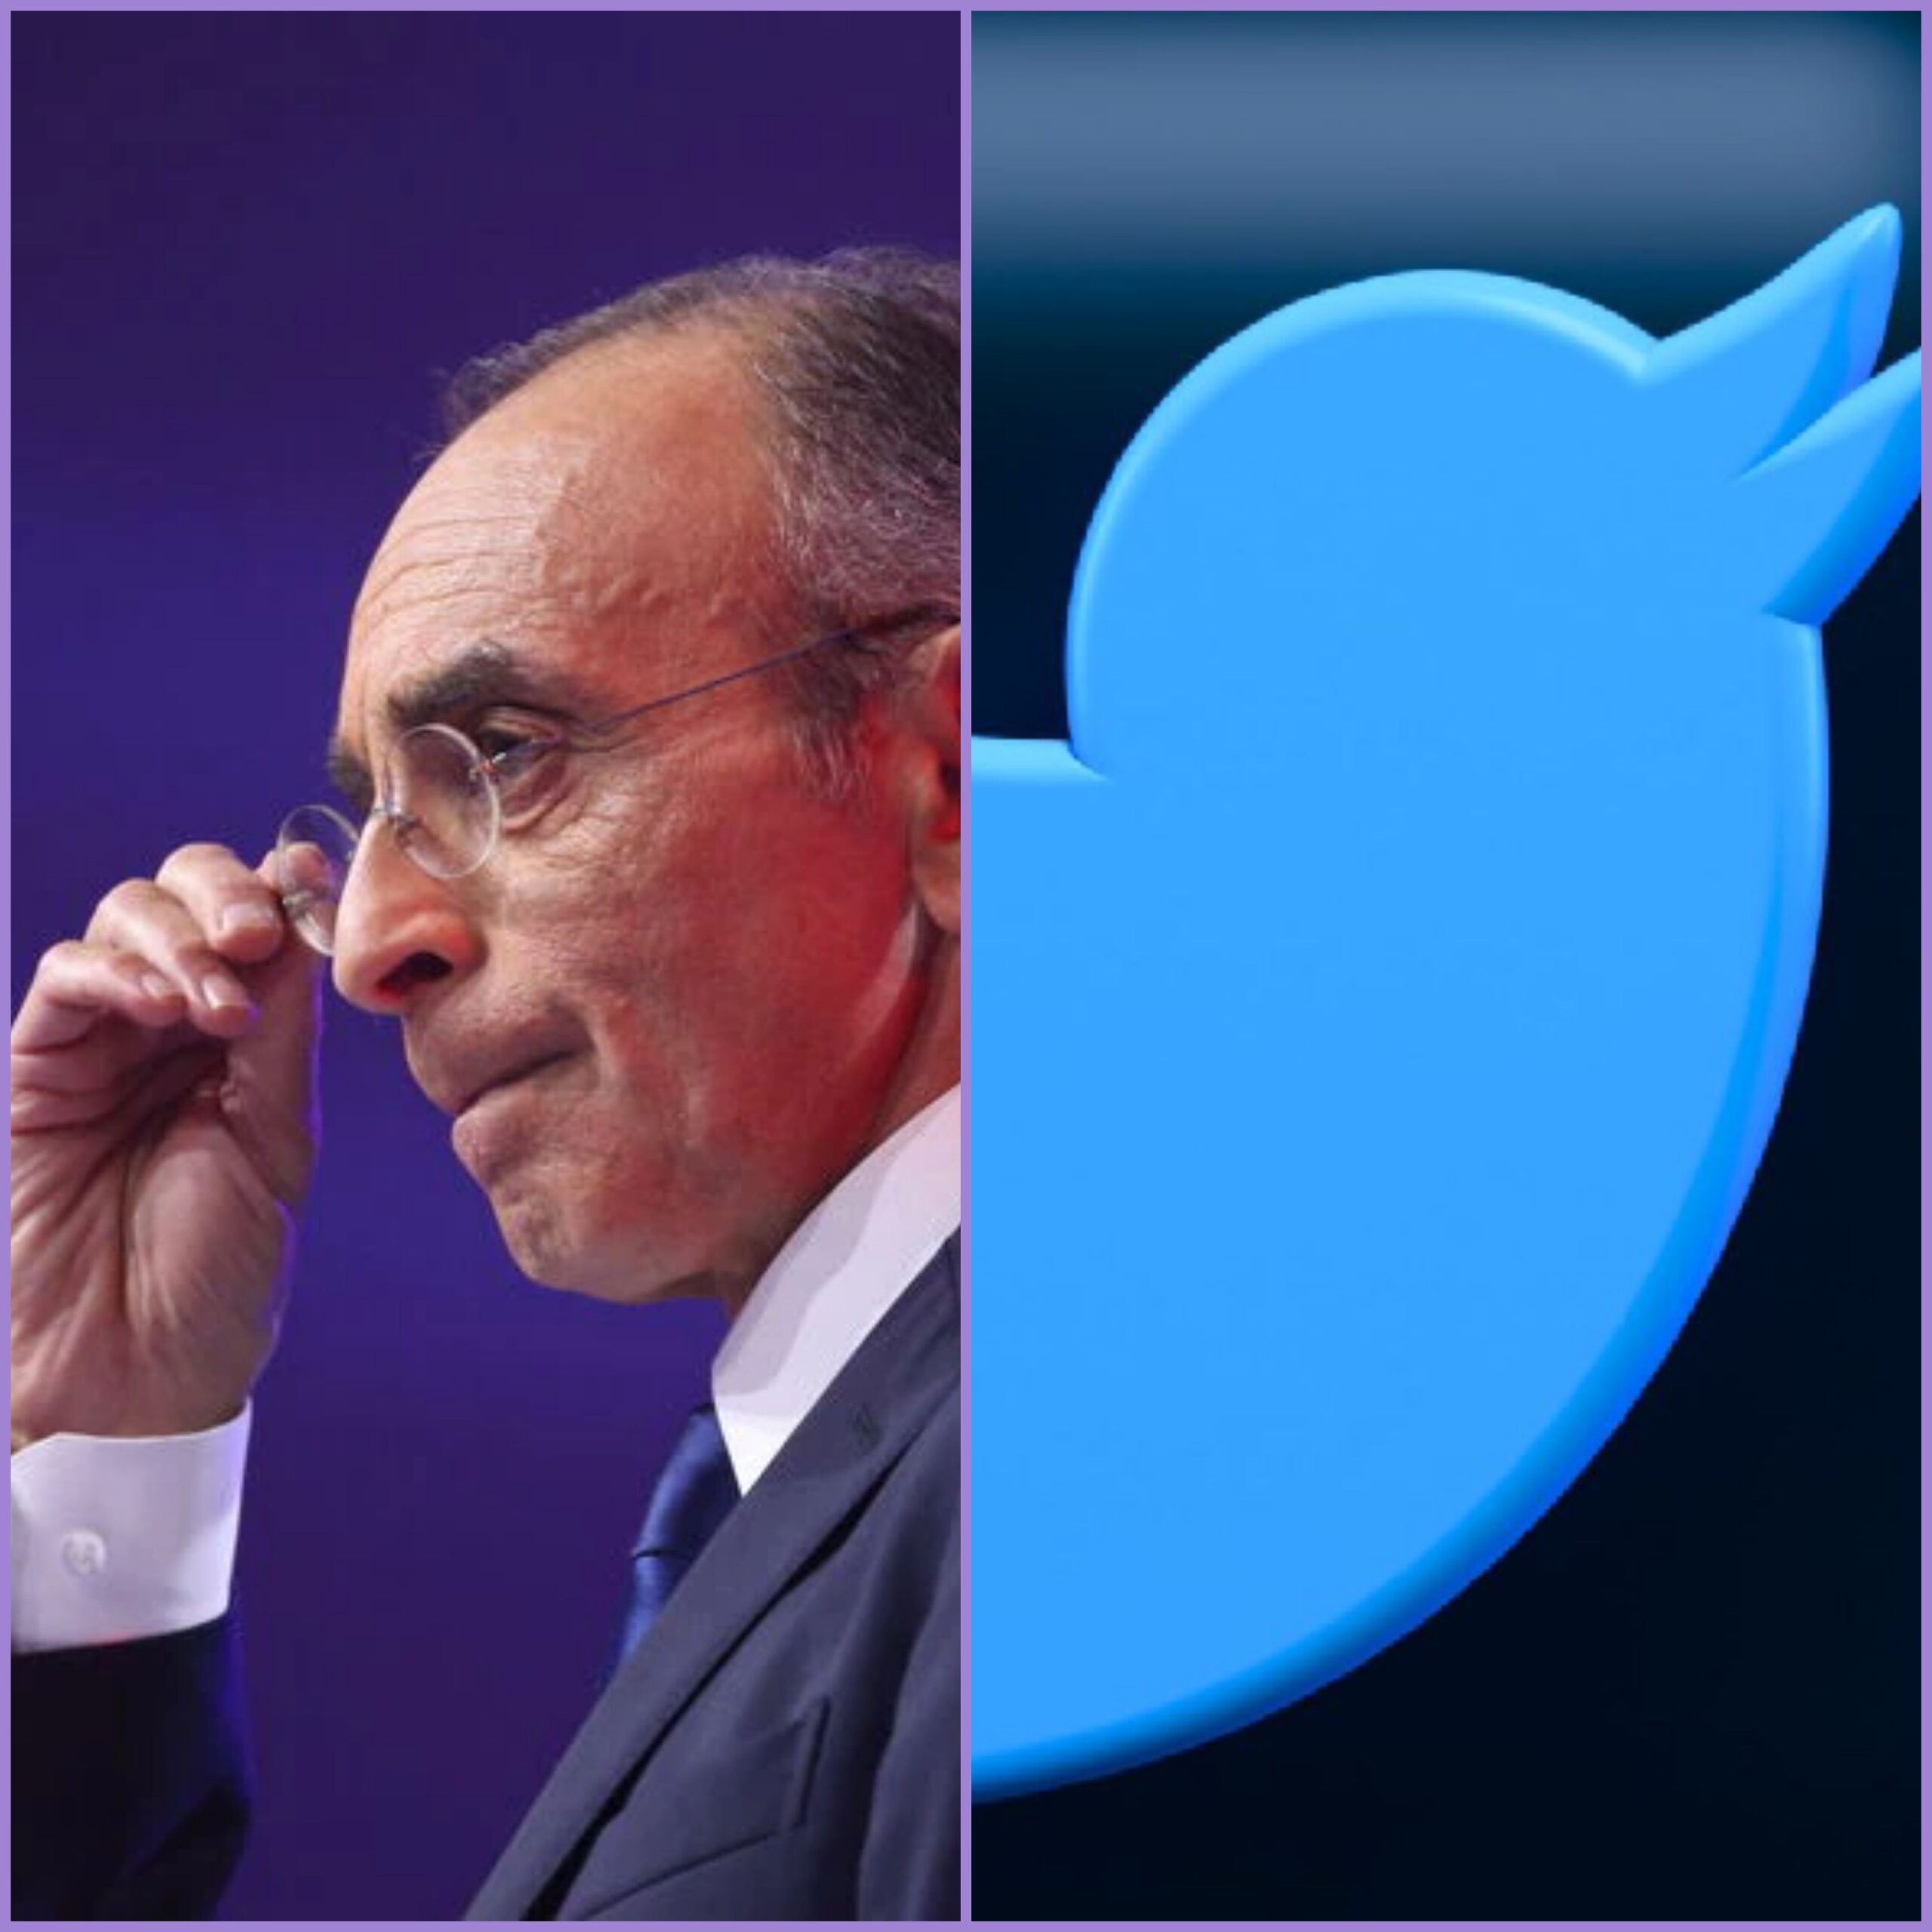 La campagne d’Éric Zemmour visée par la censure sur Twitter après la suspension de nombreux comptes de campagne